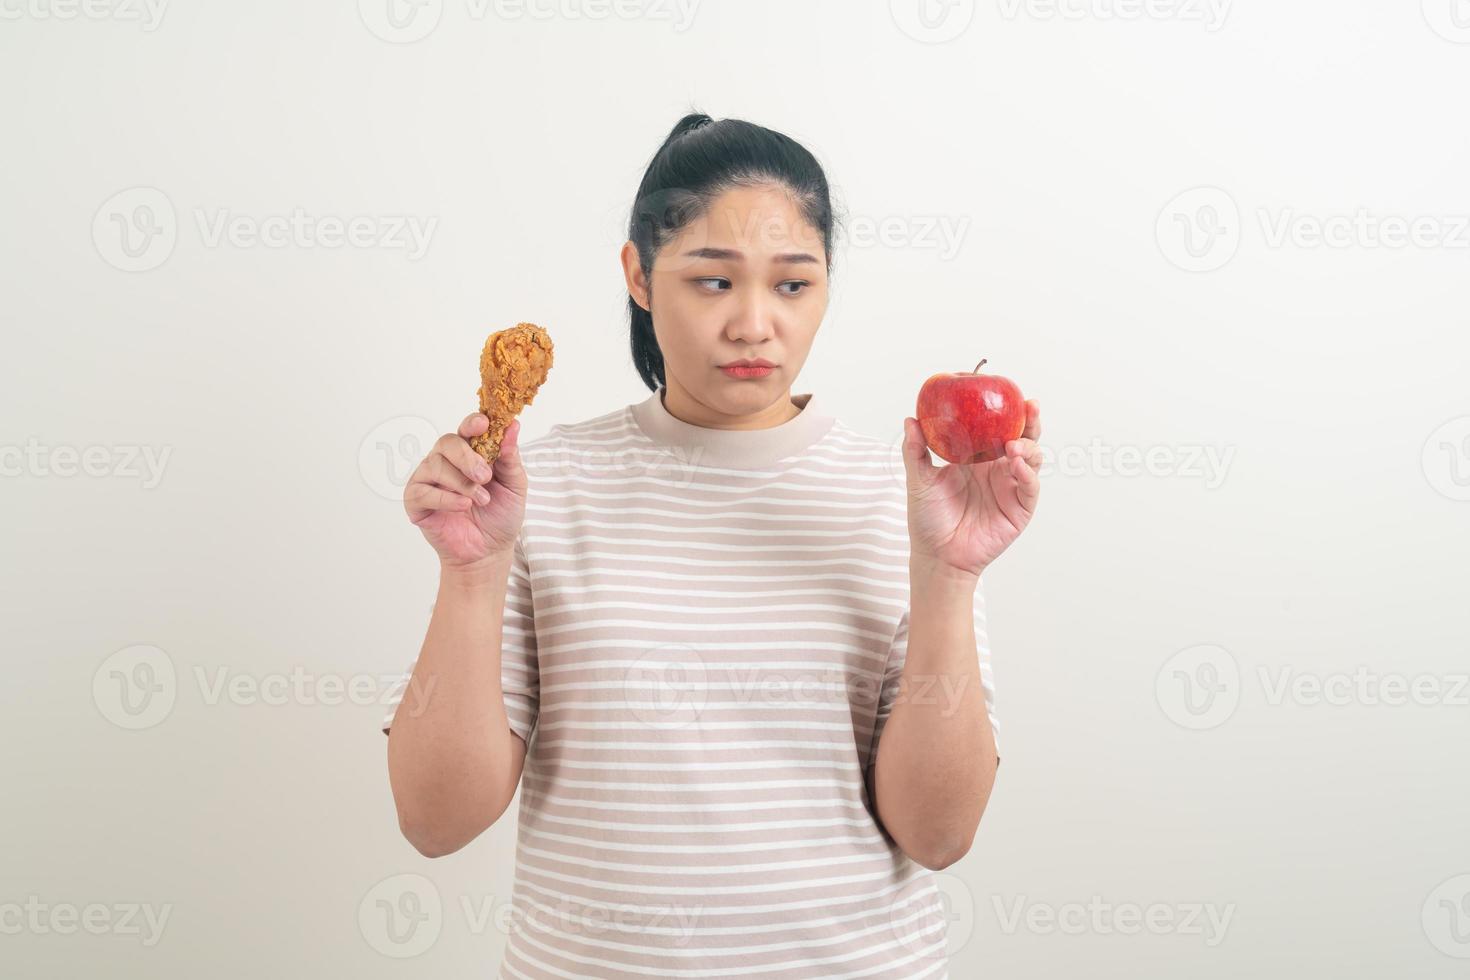 asiatisk kvinna med stekt kyckling och äpple till hands foto